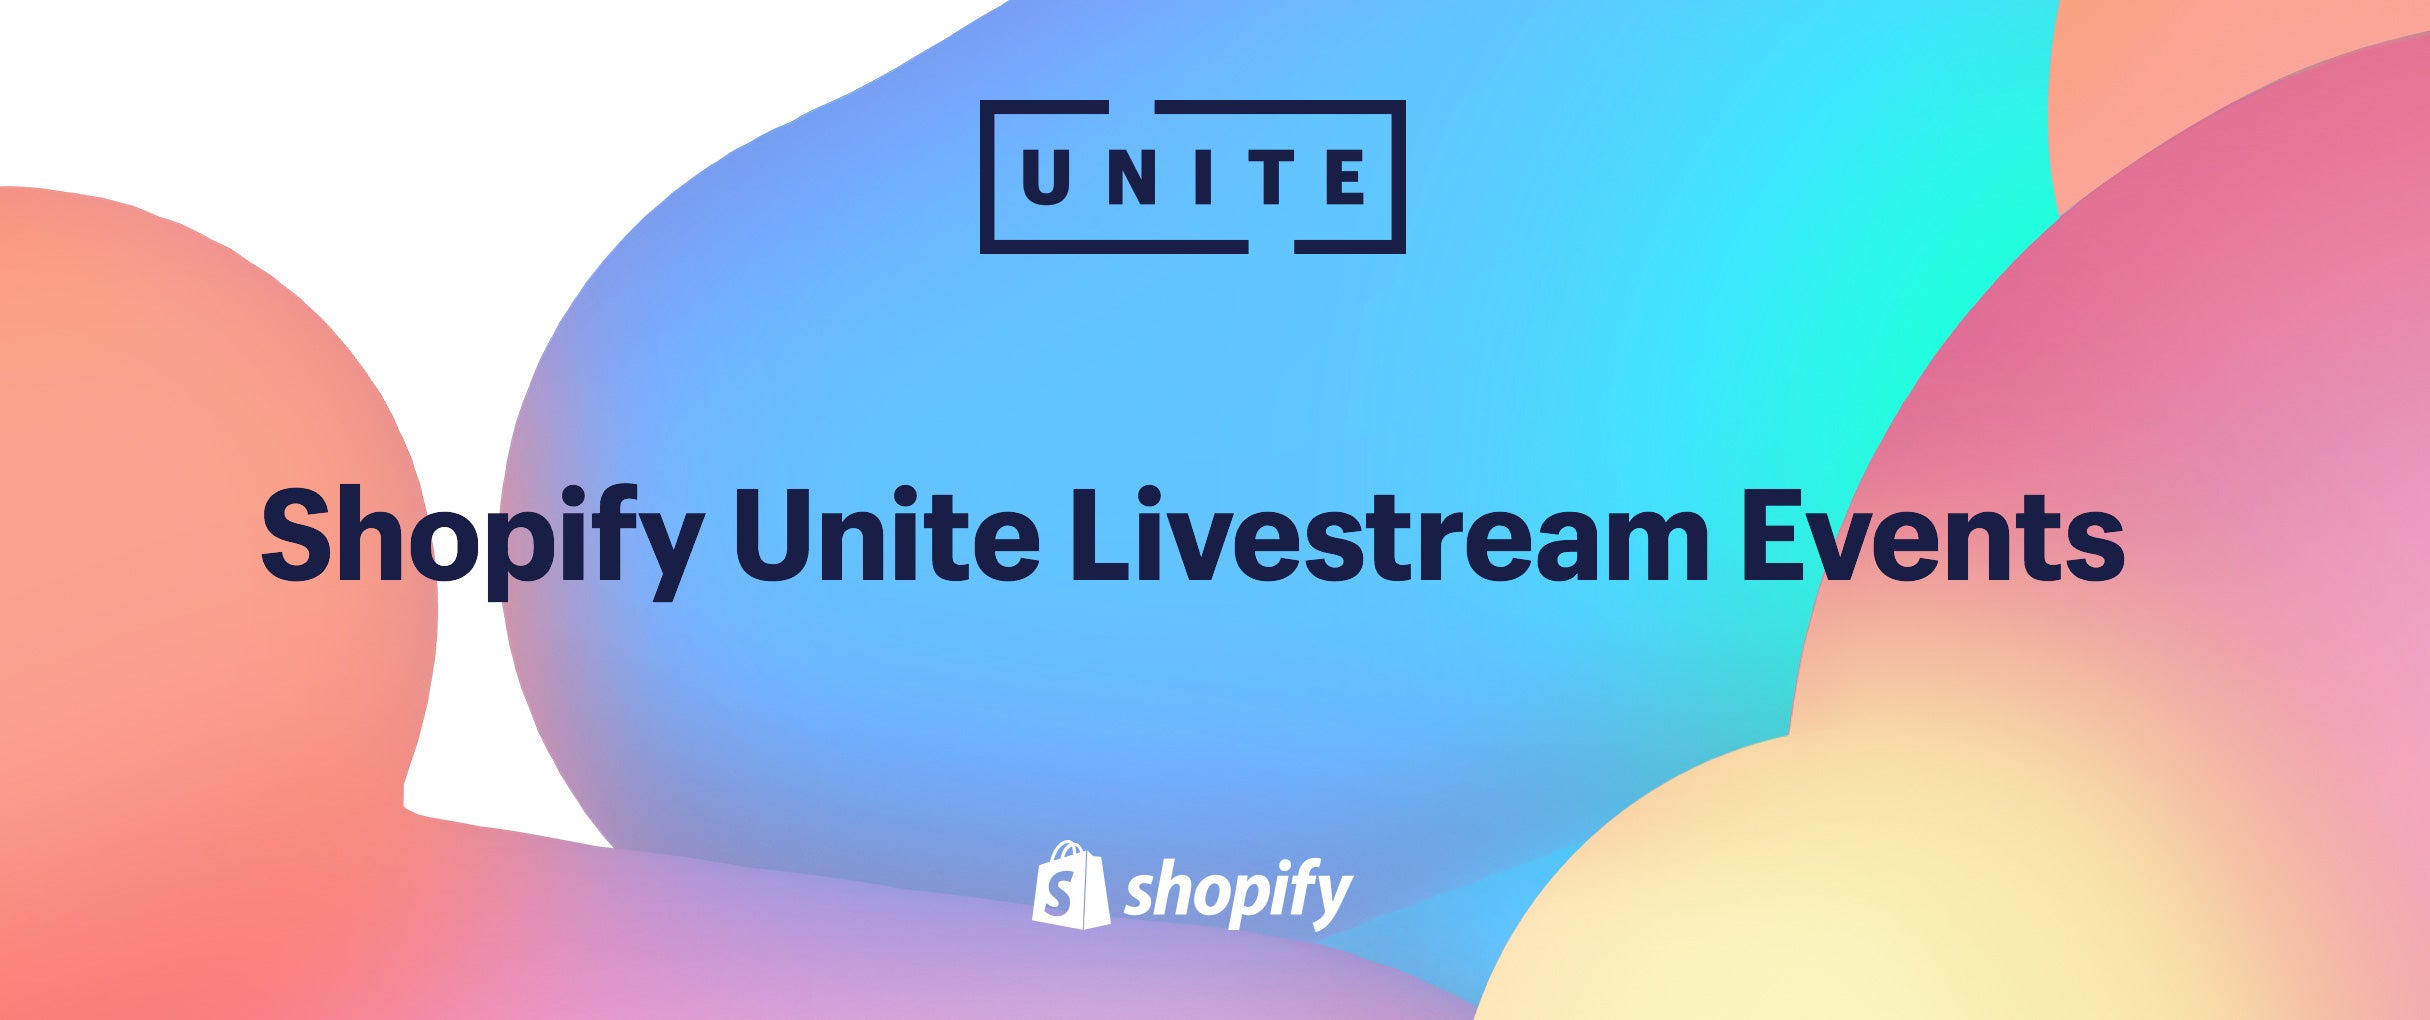 shopify unite livestream events 2018